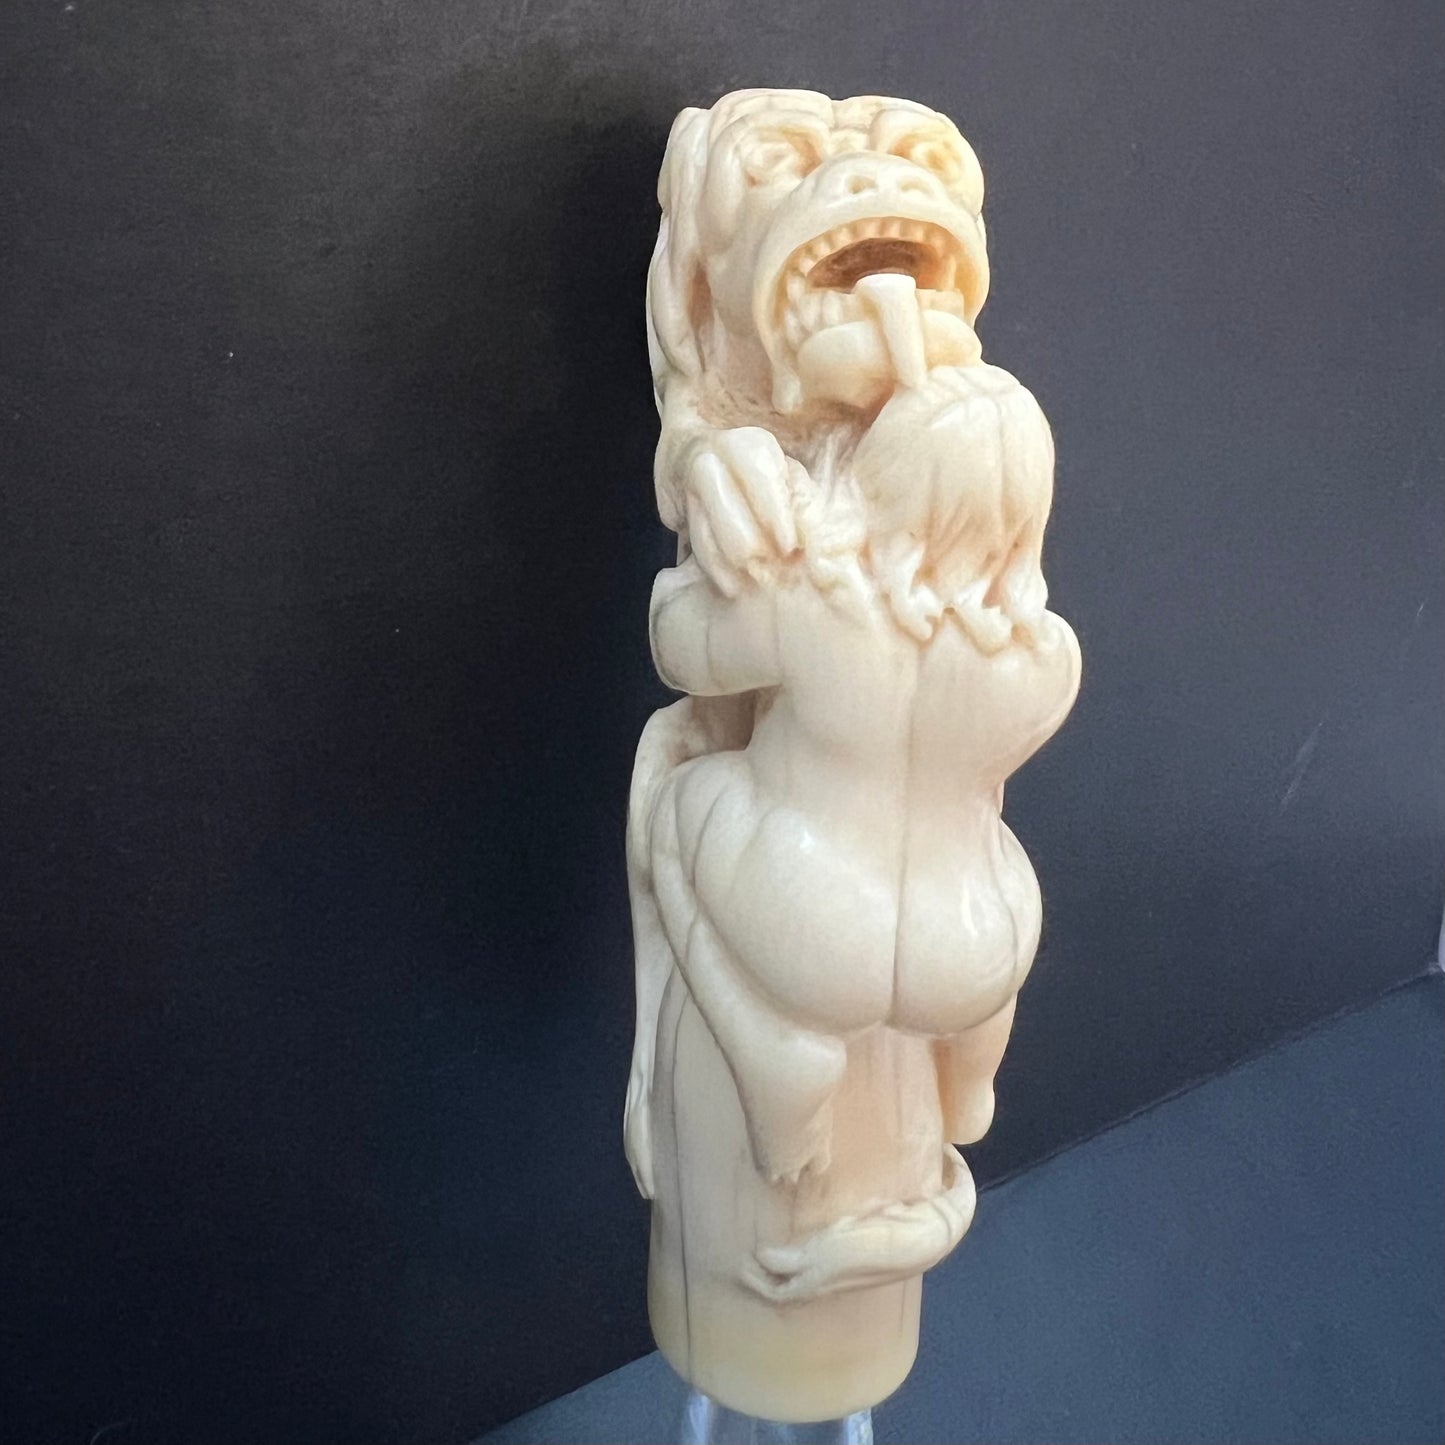 罕见的 18 世纪末至 19 世纪象牙雕刻狮子吞食基督教殉道者的手柄